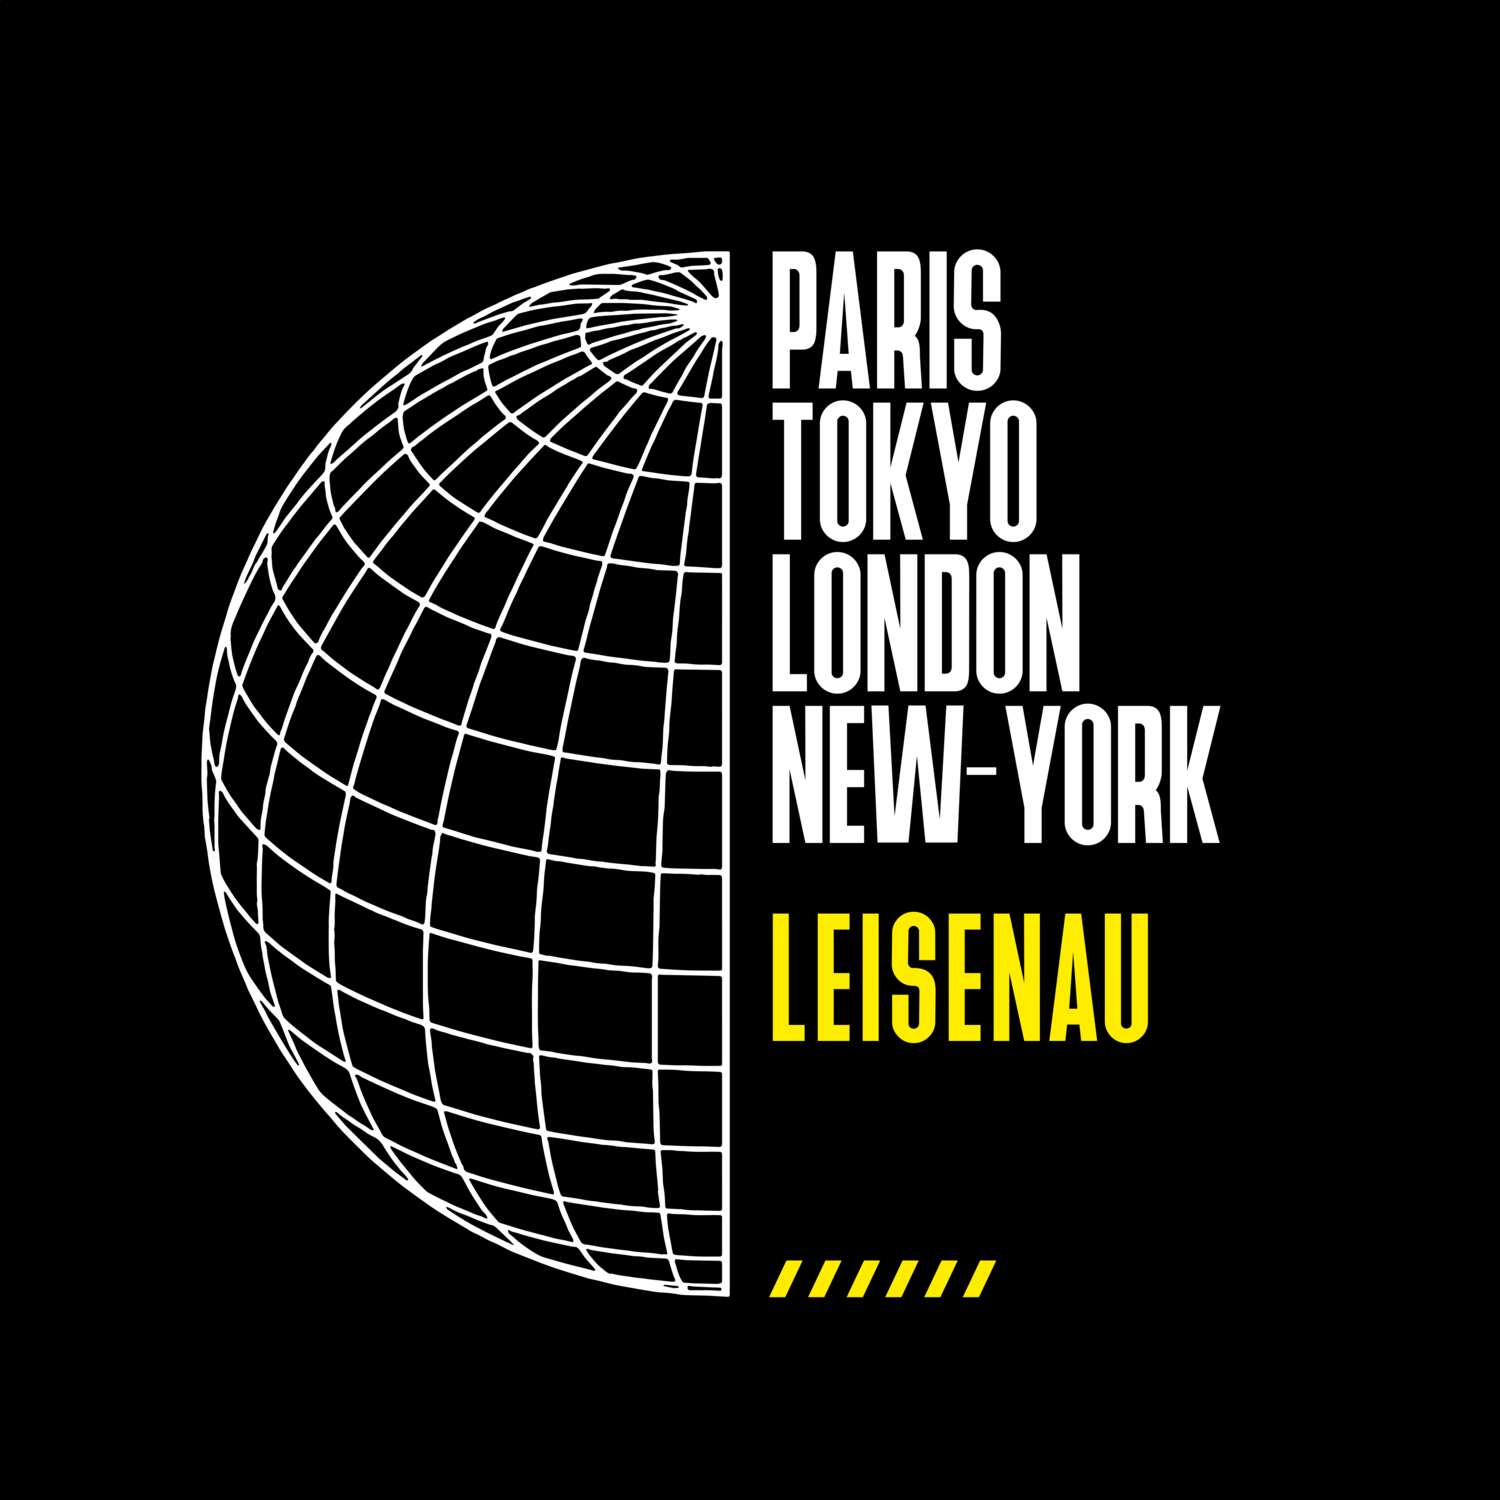 Leisenau T-Shirt »Paris Tokyo London«